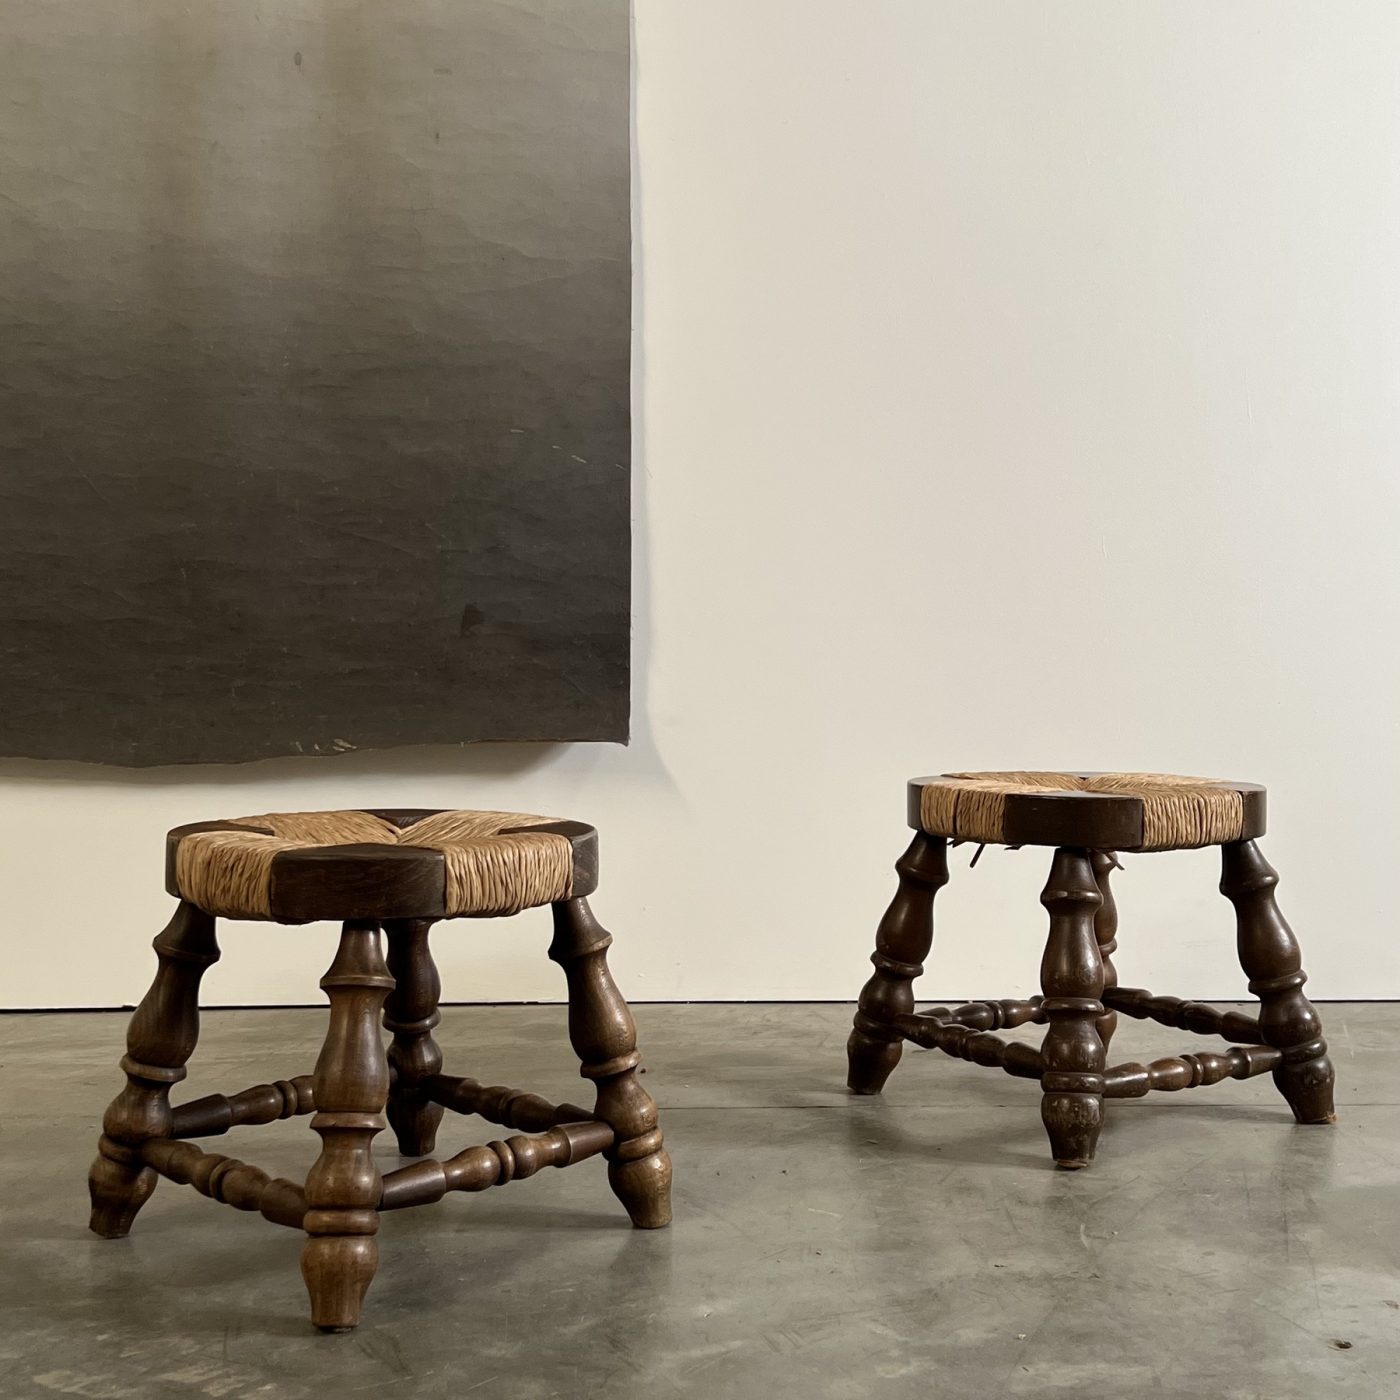 objet-vagabond-brutalist-stools0000